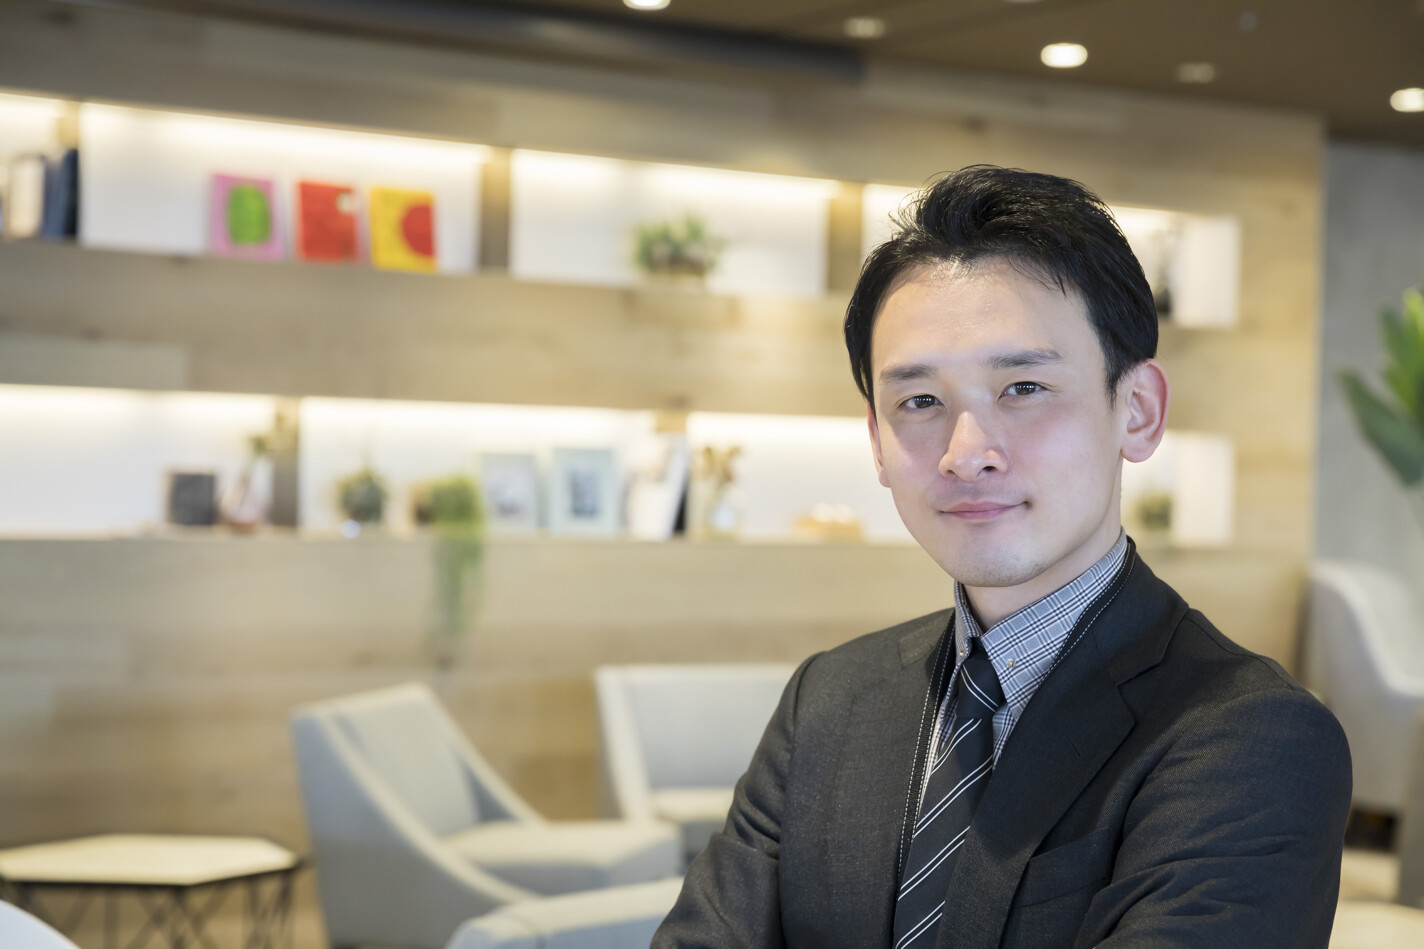 沖縄県 ホテル 旅館の求人 リゾートホテルの新規開業ホテルの収益最大化を図る レベニューマネジメント